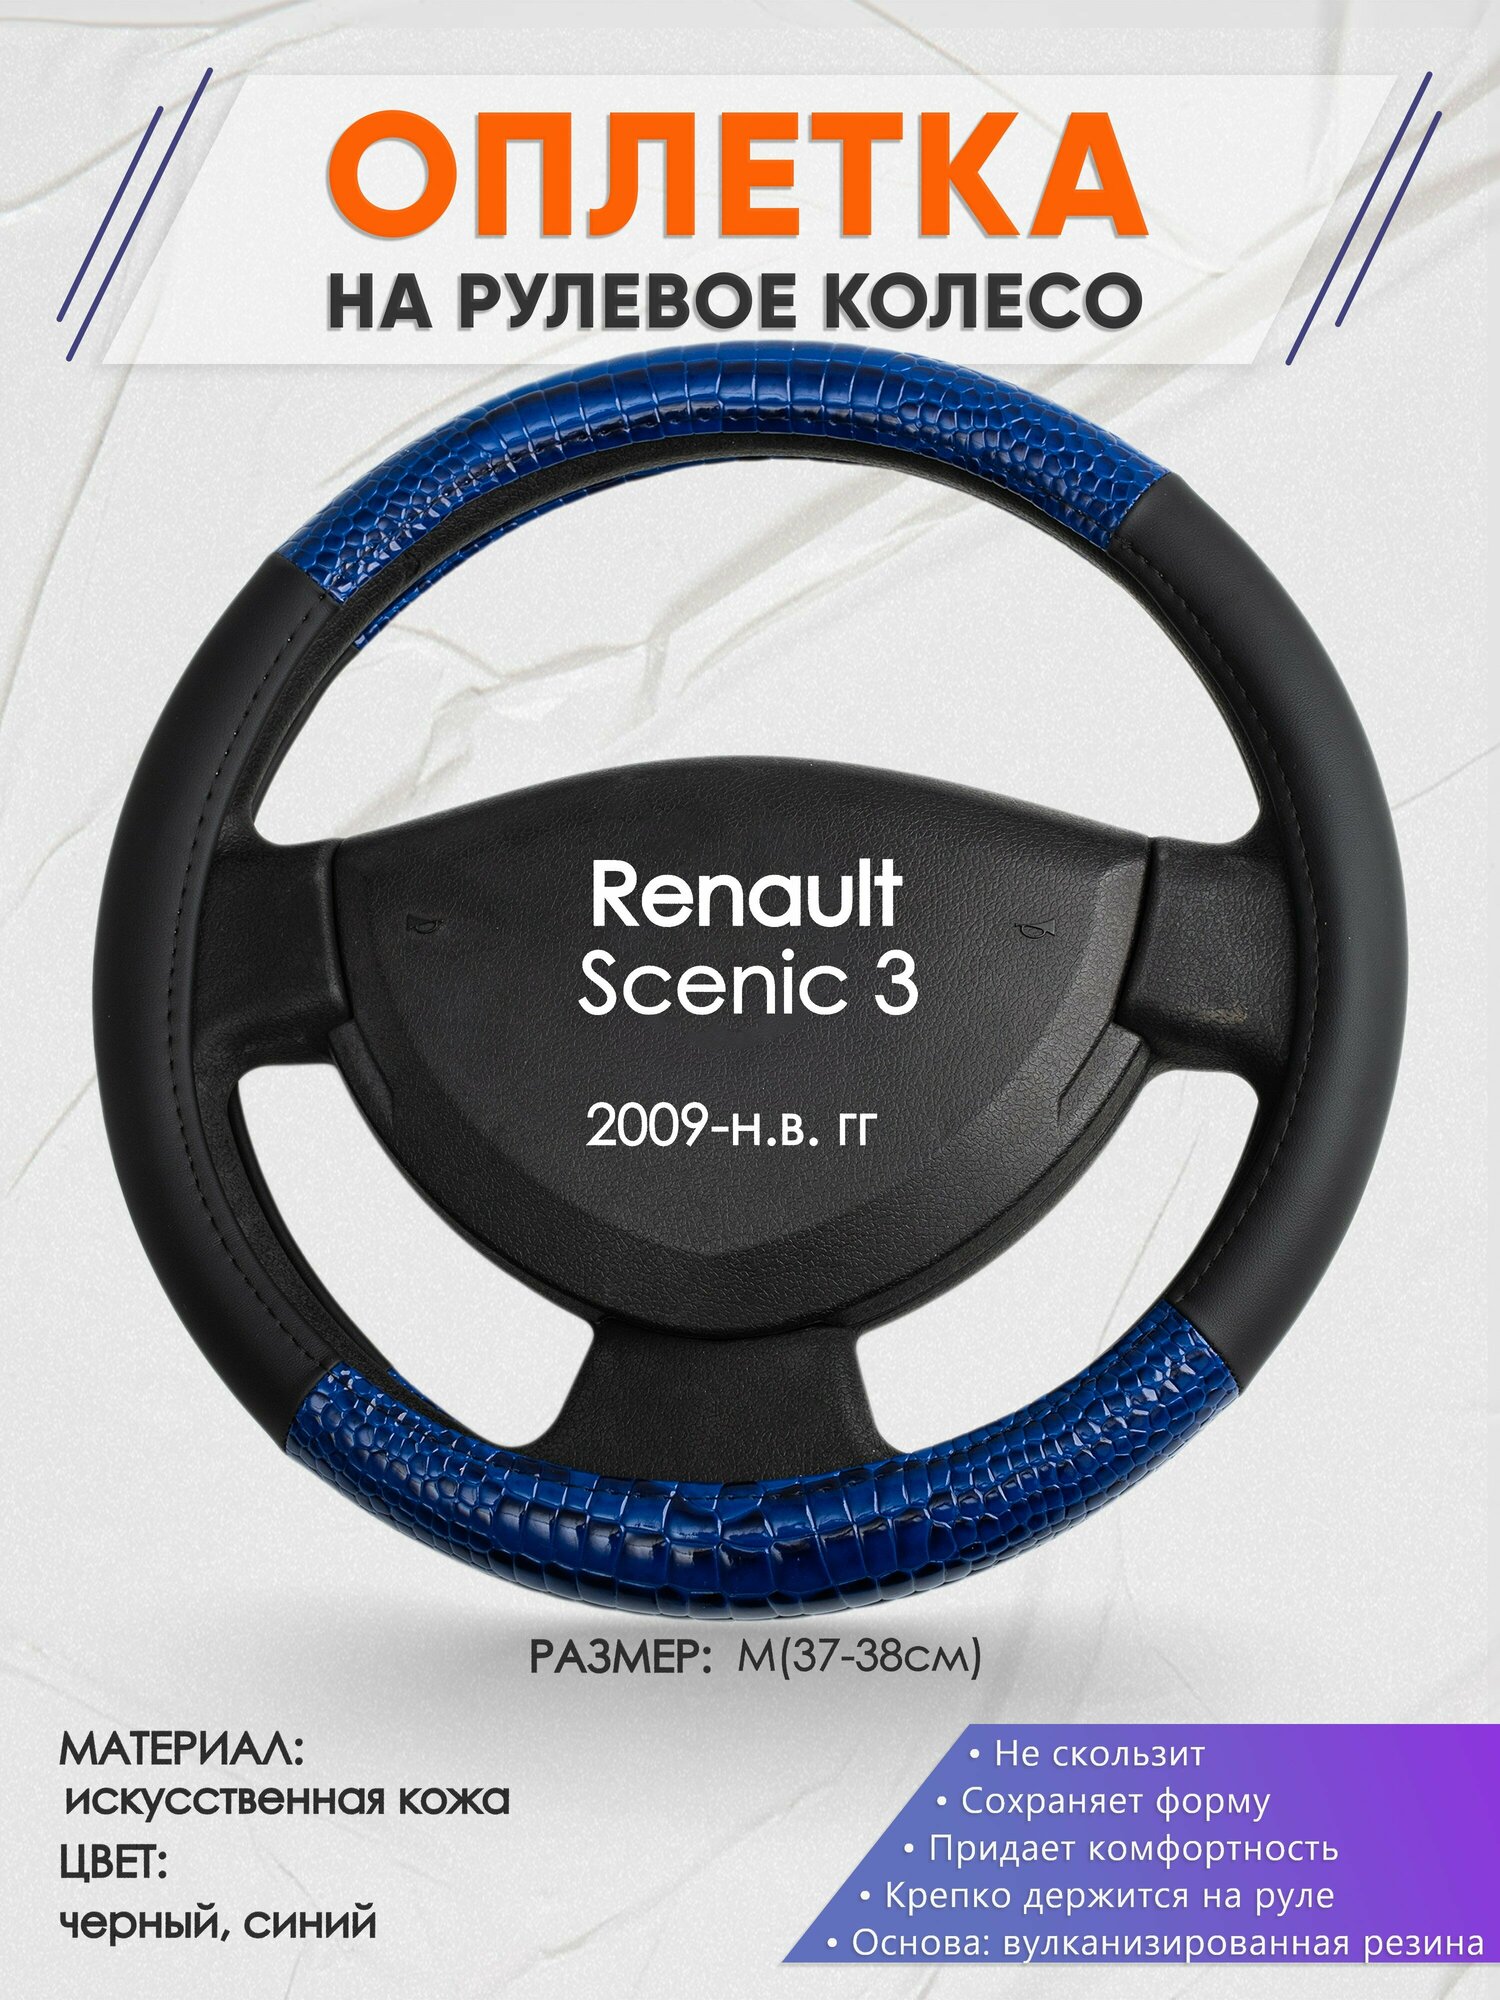 Оплетка на руль для Renault Scenic 3(Рено Сценик 3) 2009-н. в M(37-38см) Искусственная кожа 68